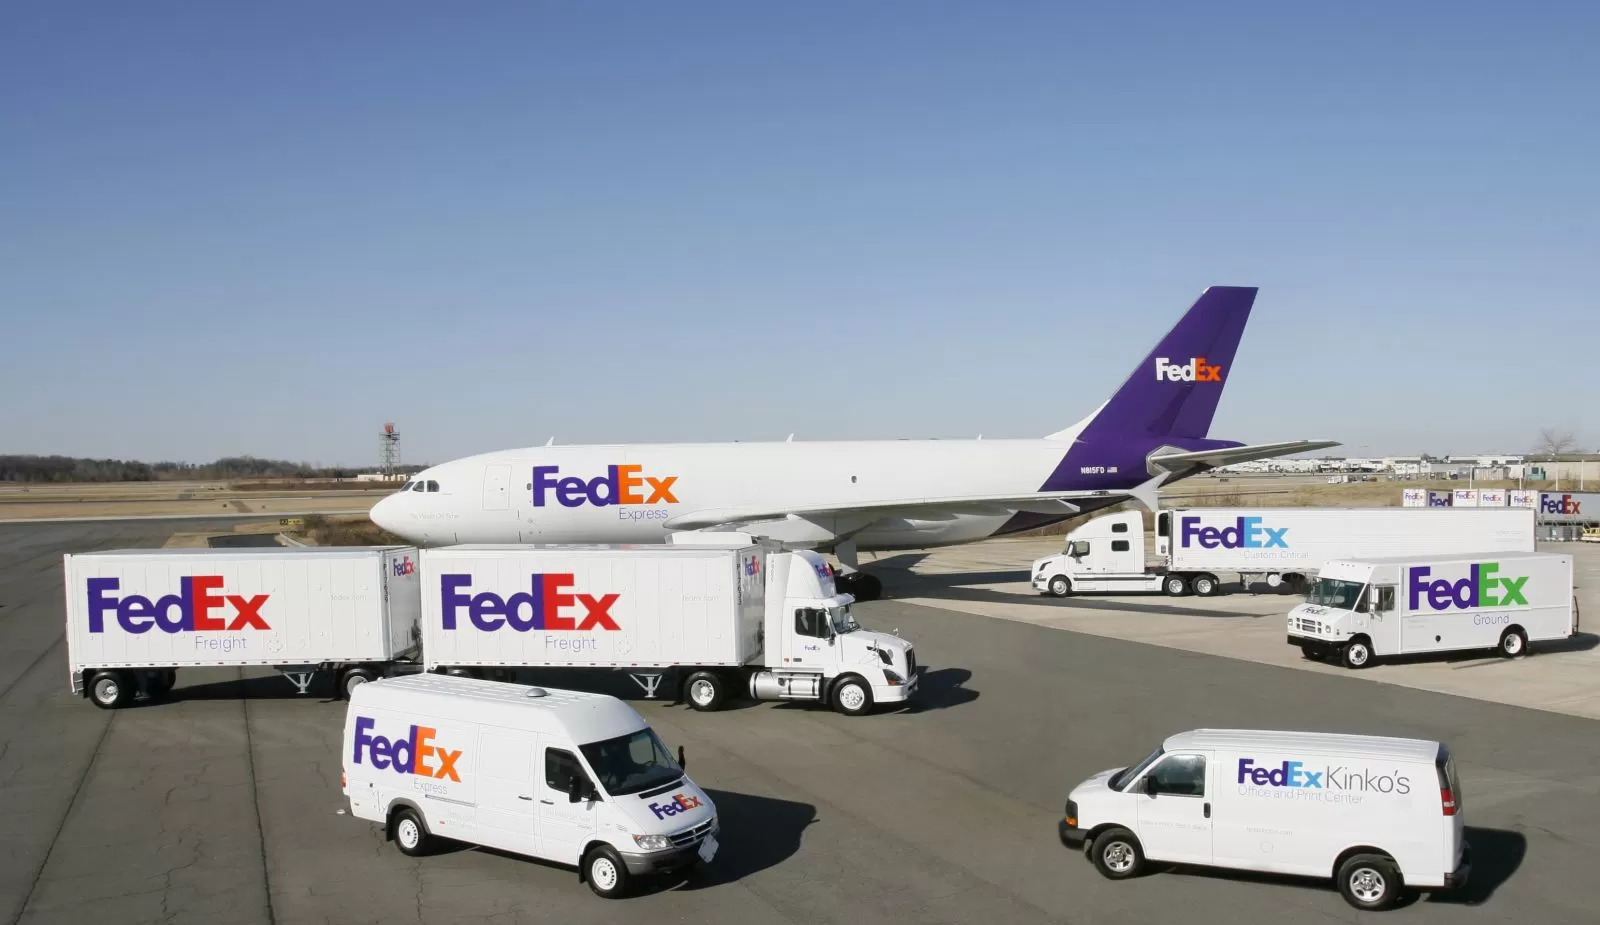 [FedEx] Hướng dẫn thủ tục & cách đóng gói gửi hàng qua FedEx